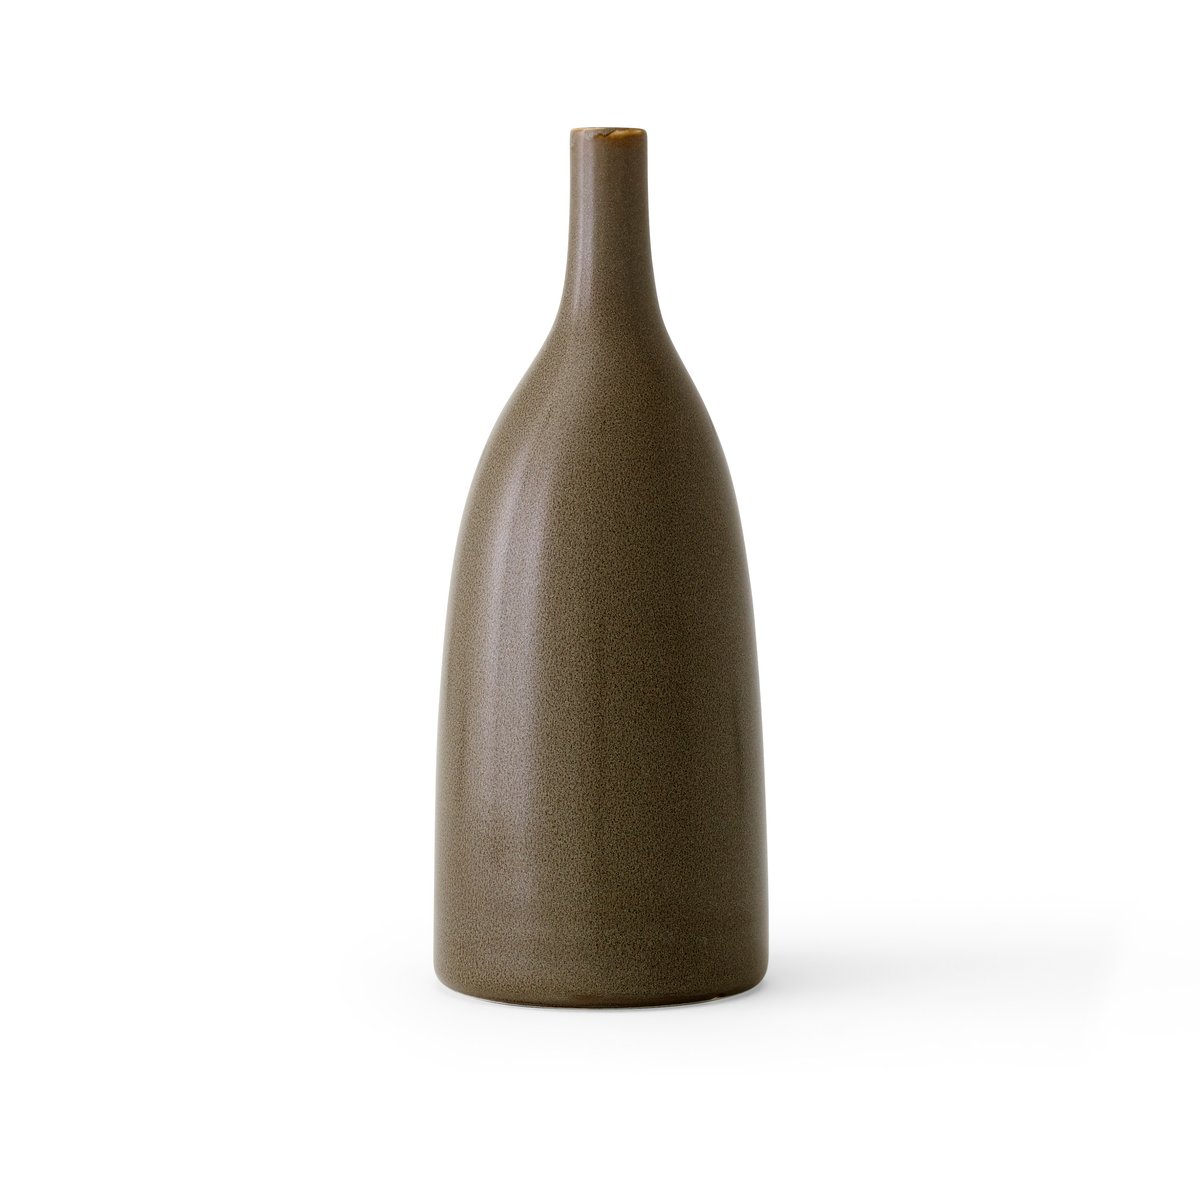 Bilde av Audo Copenhagen Strandgade vase 25 cm Ceramic fern